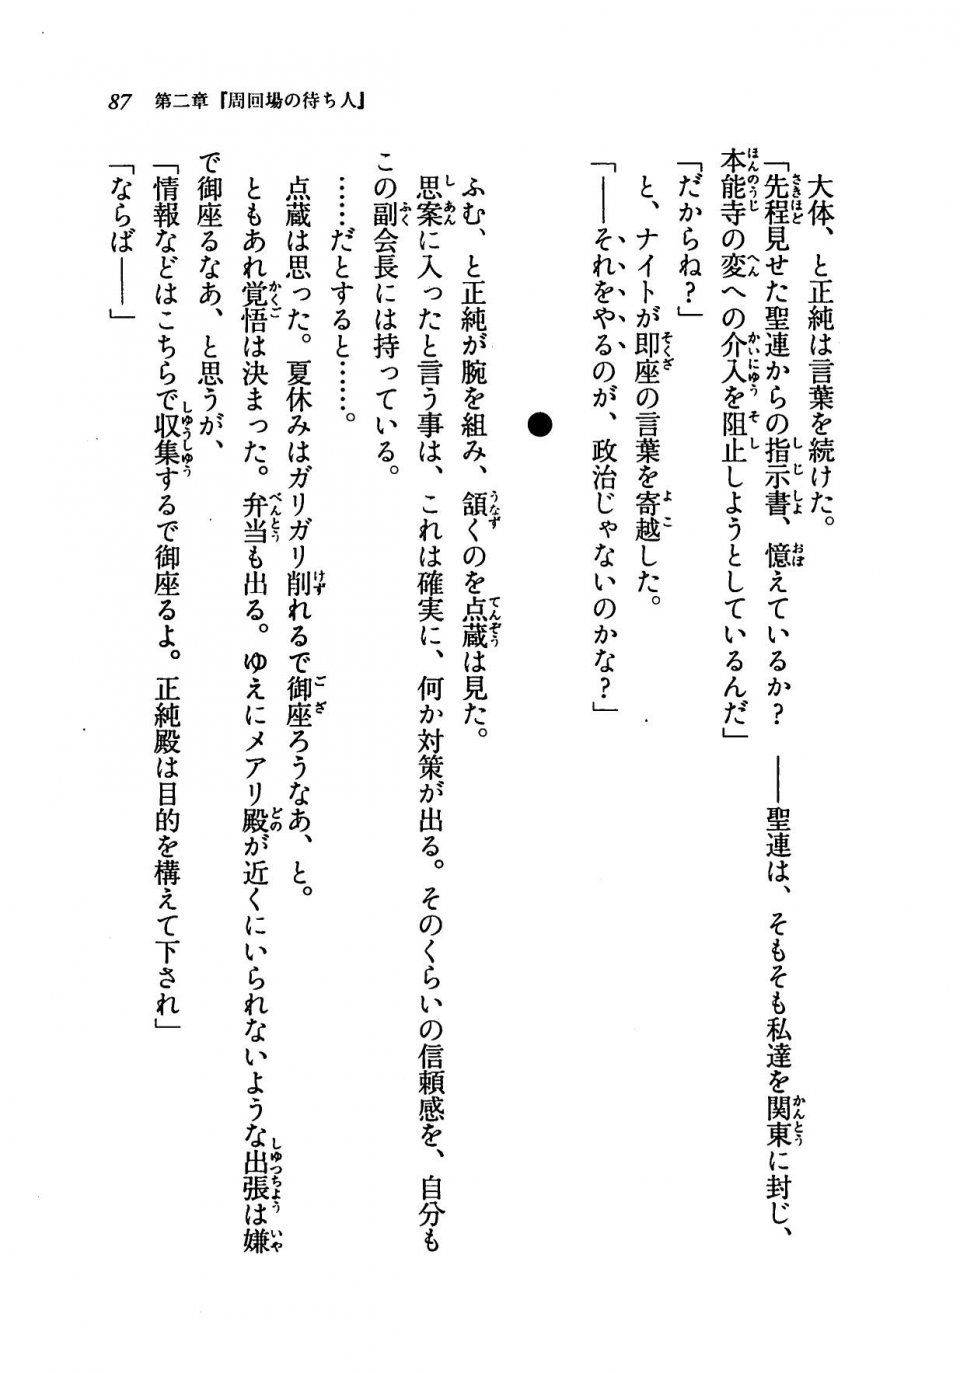 Kyoukai Senjou no Horizon LN Vol 19(8A) - Photo #87